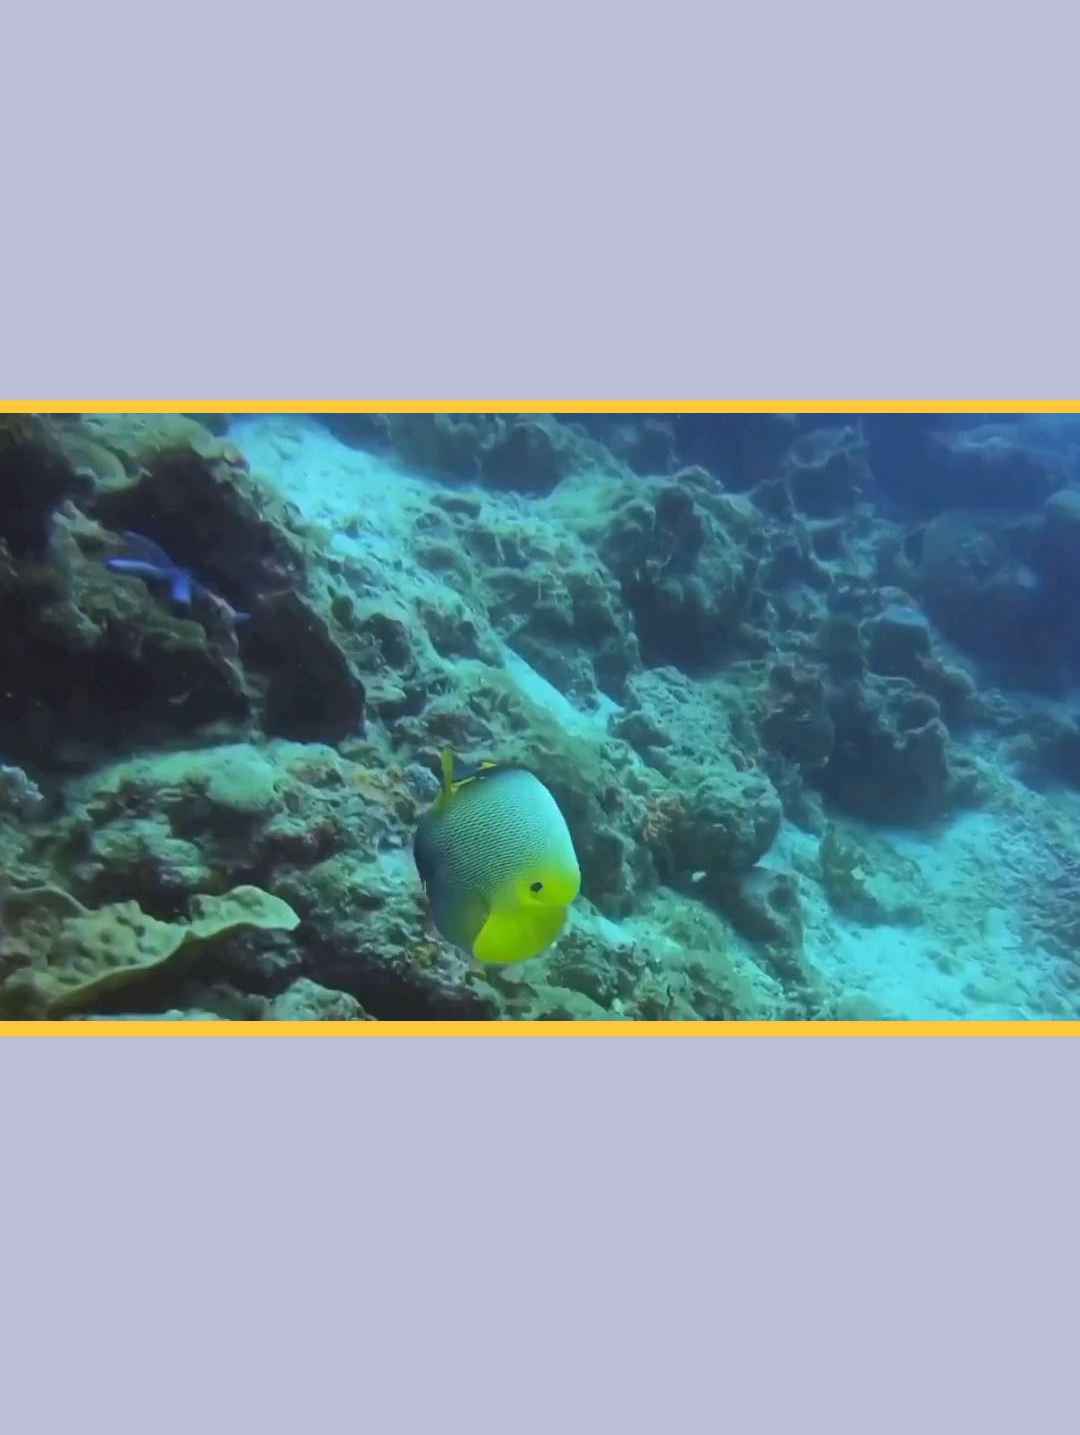 澳大利亚大堡礁：海底世界的奇迹乐园